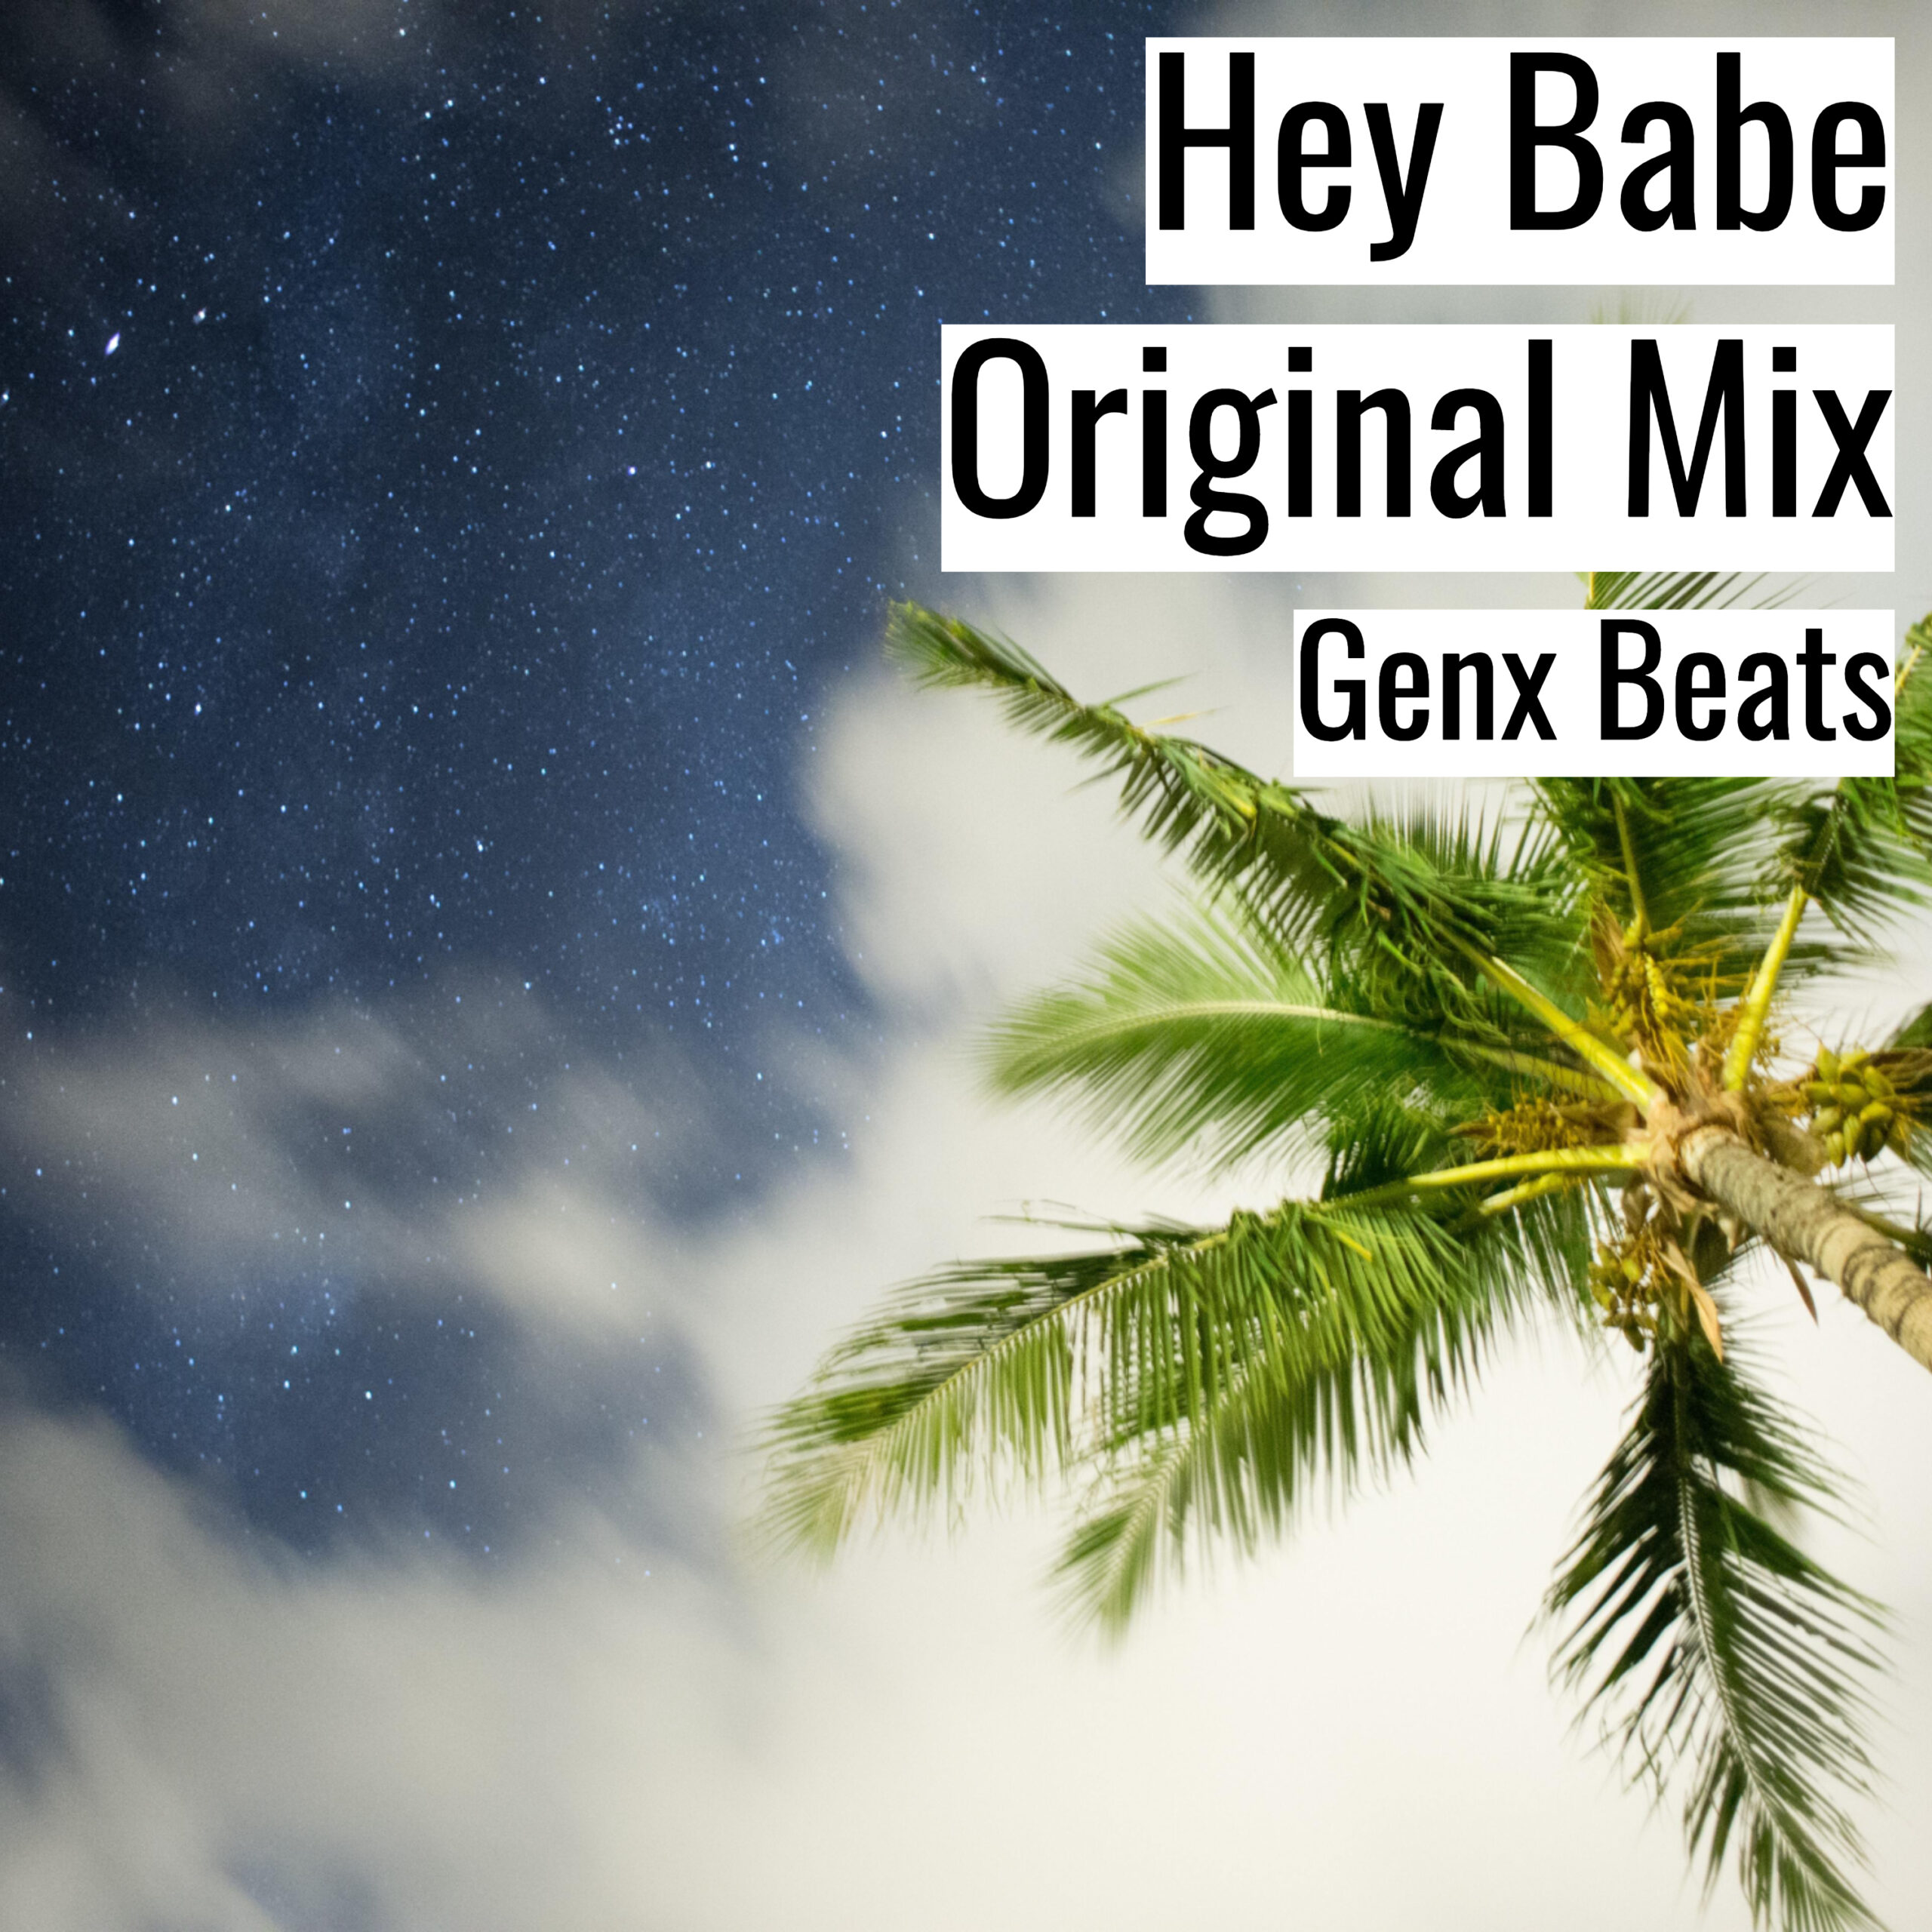 Hey Babe Original Mix scaled